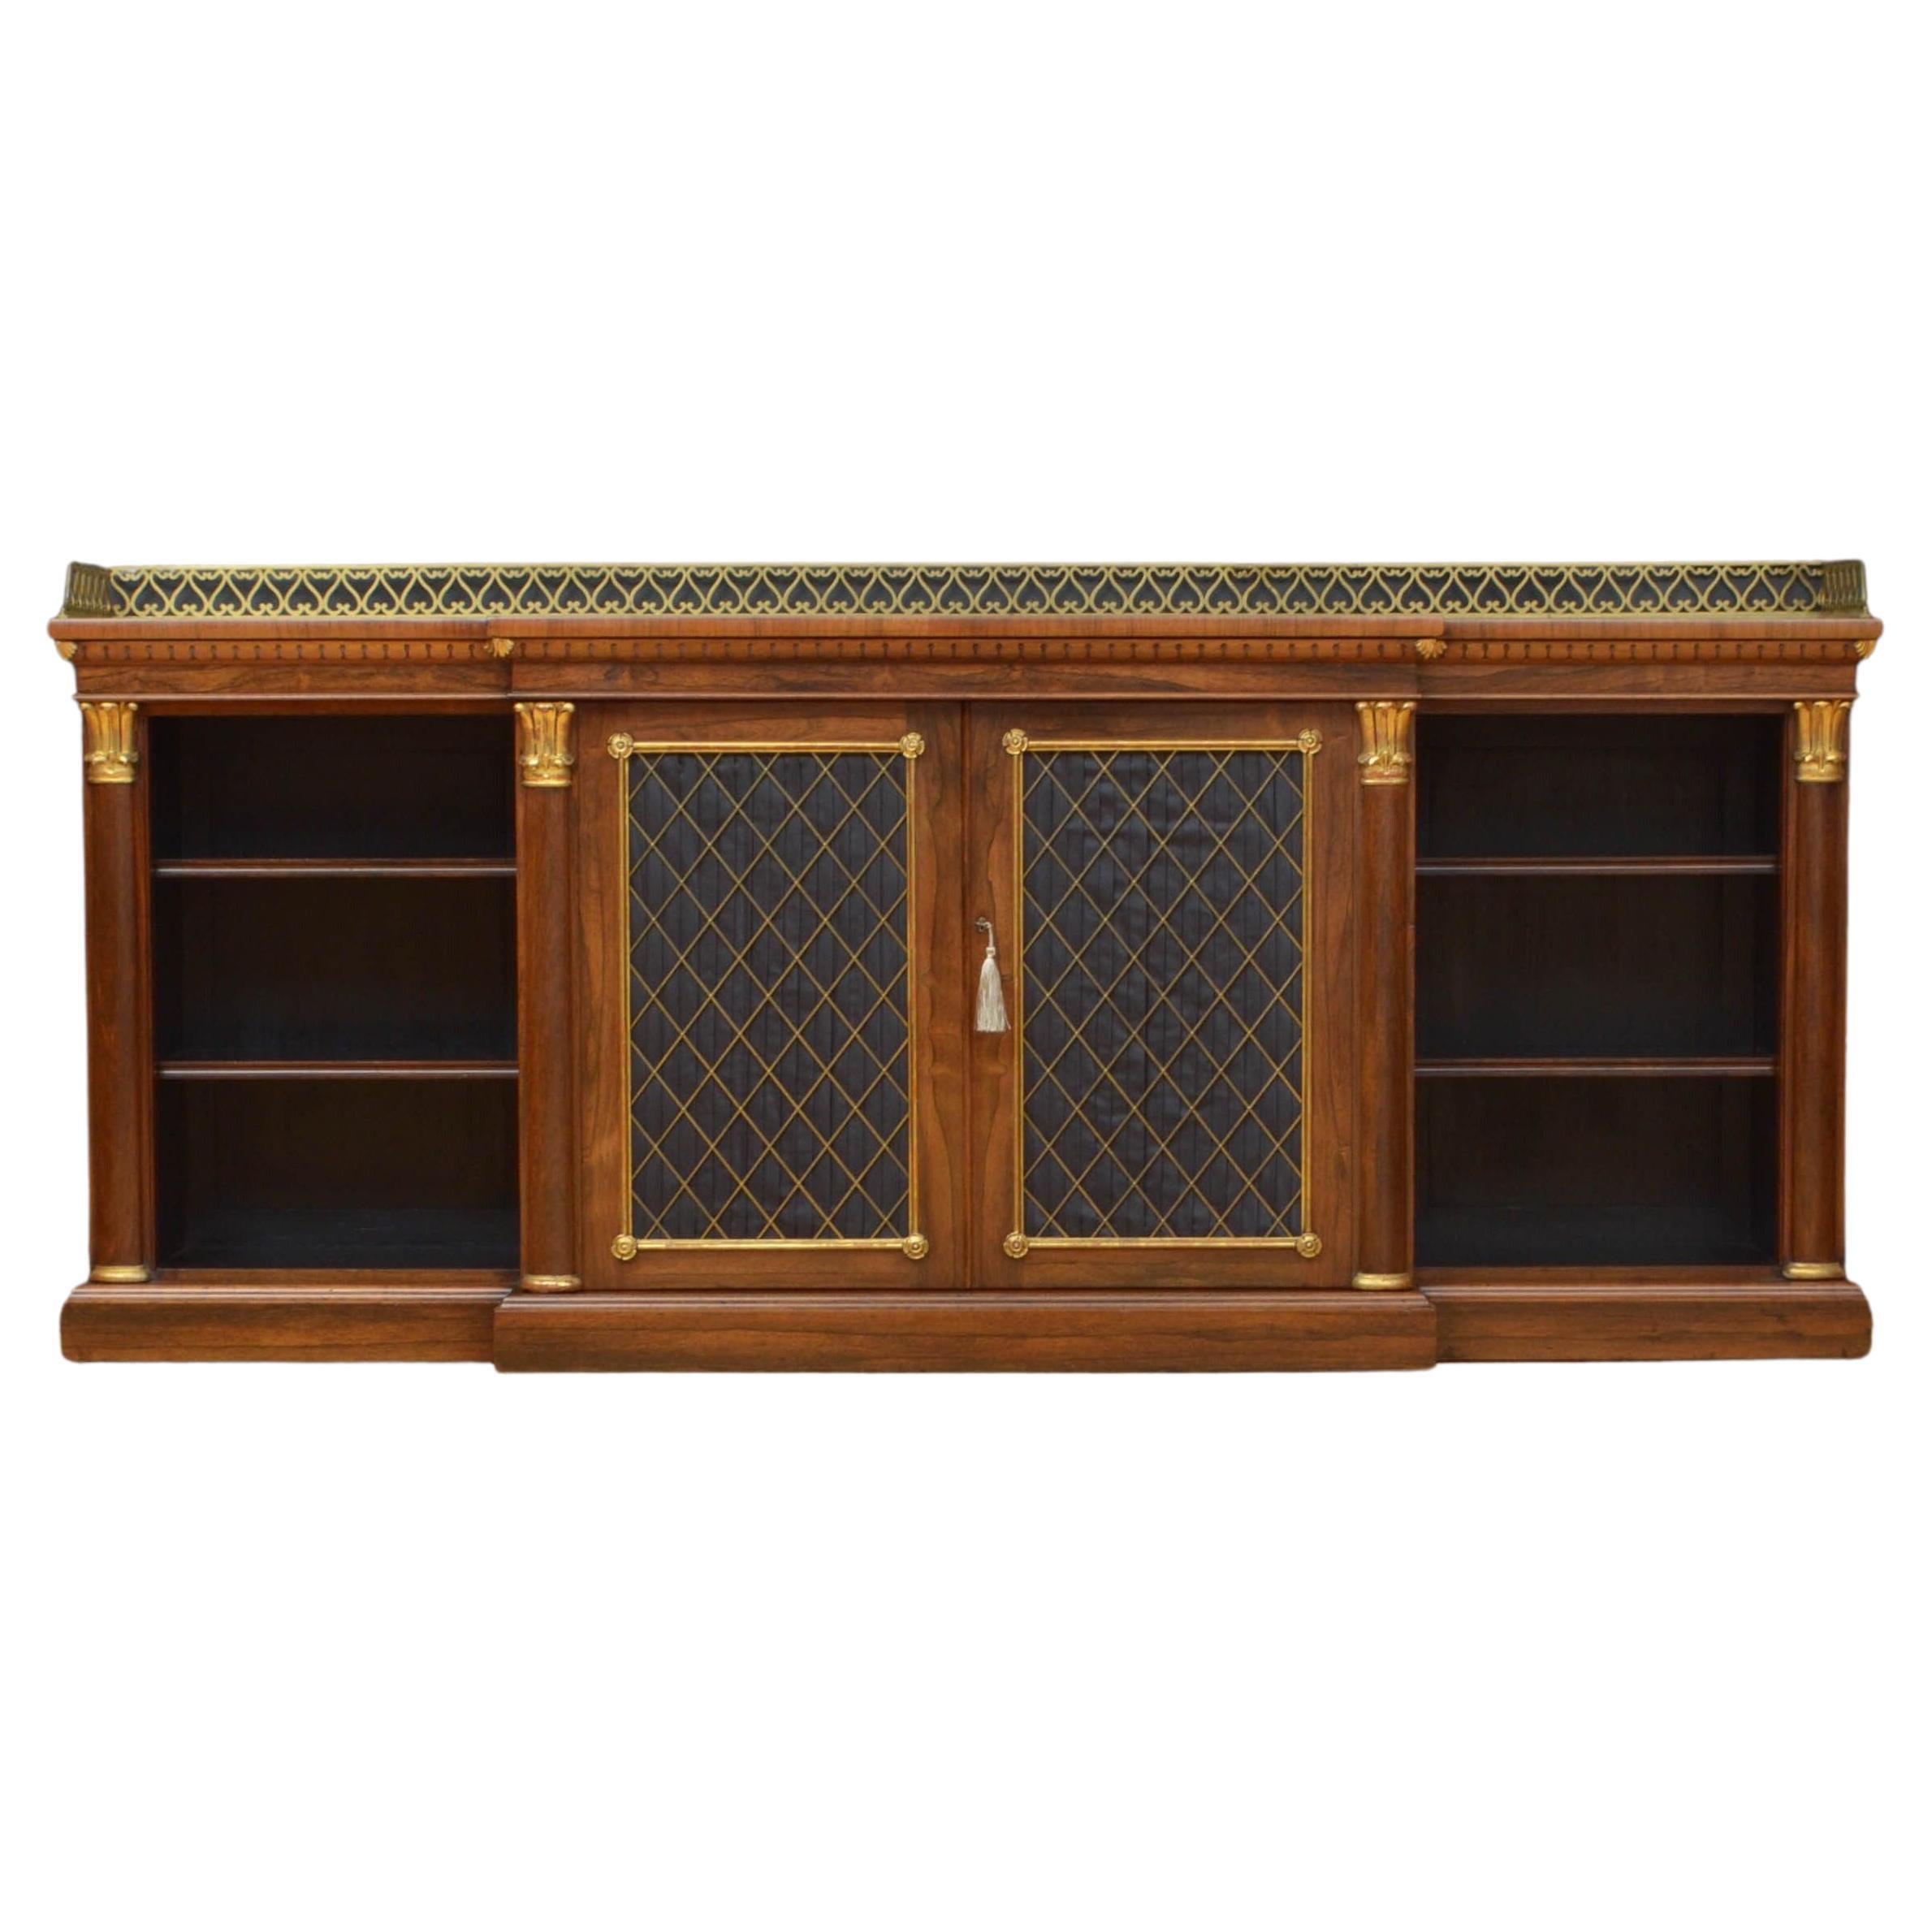 Superb Regency Bookcase or Sideboard